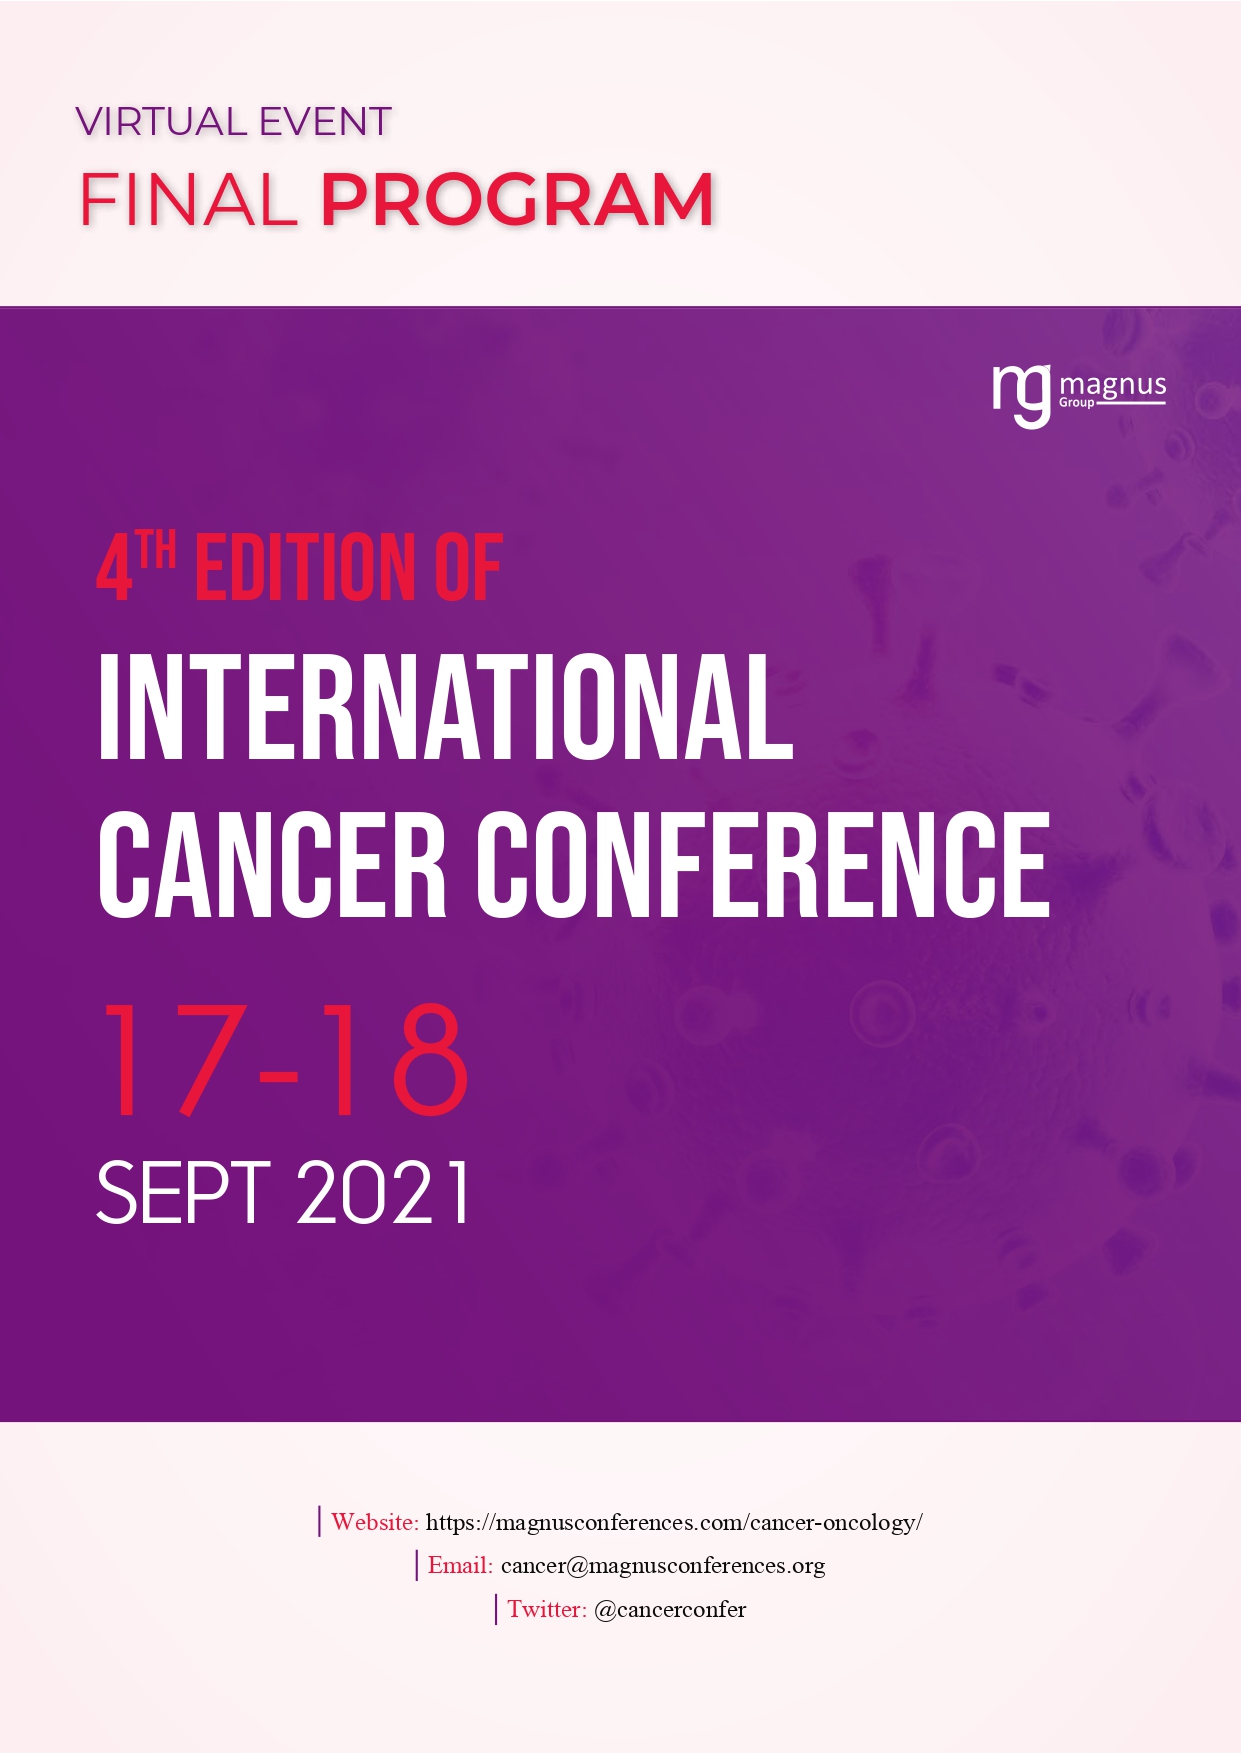 Cancer Conference | Online Event Program